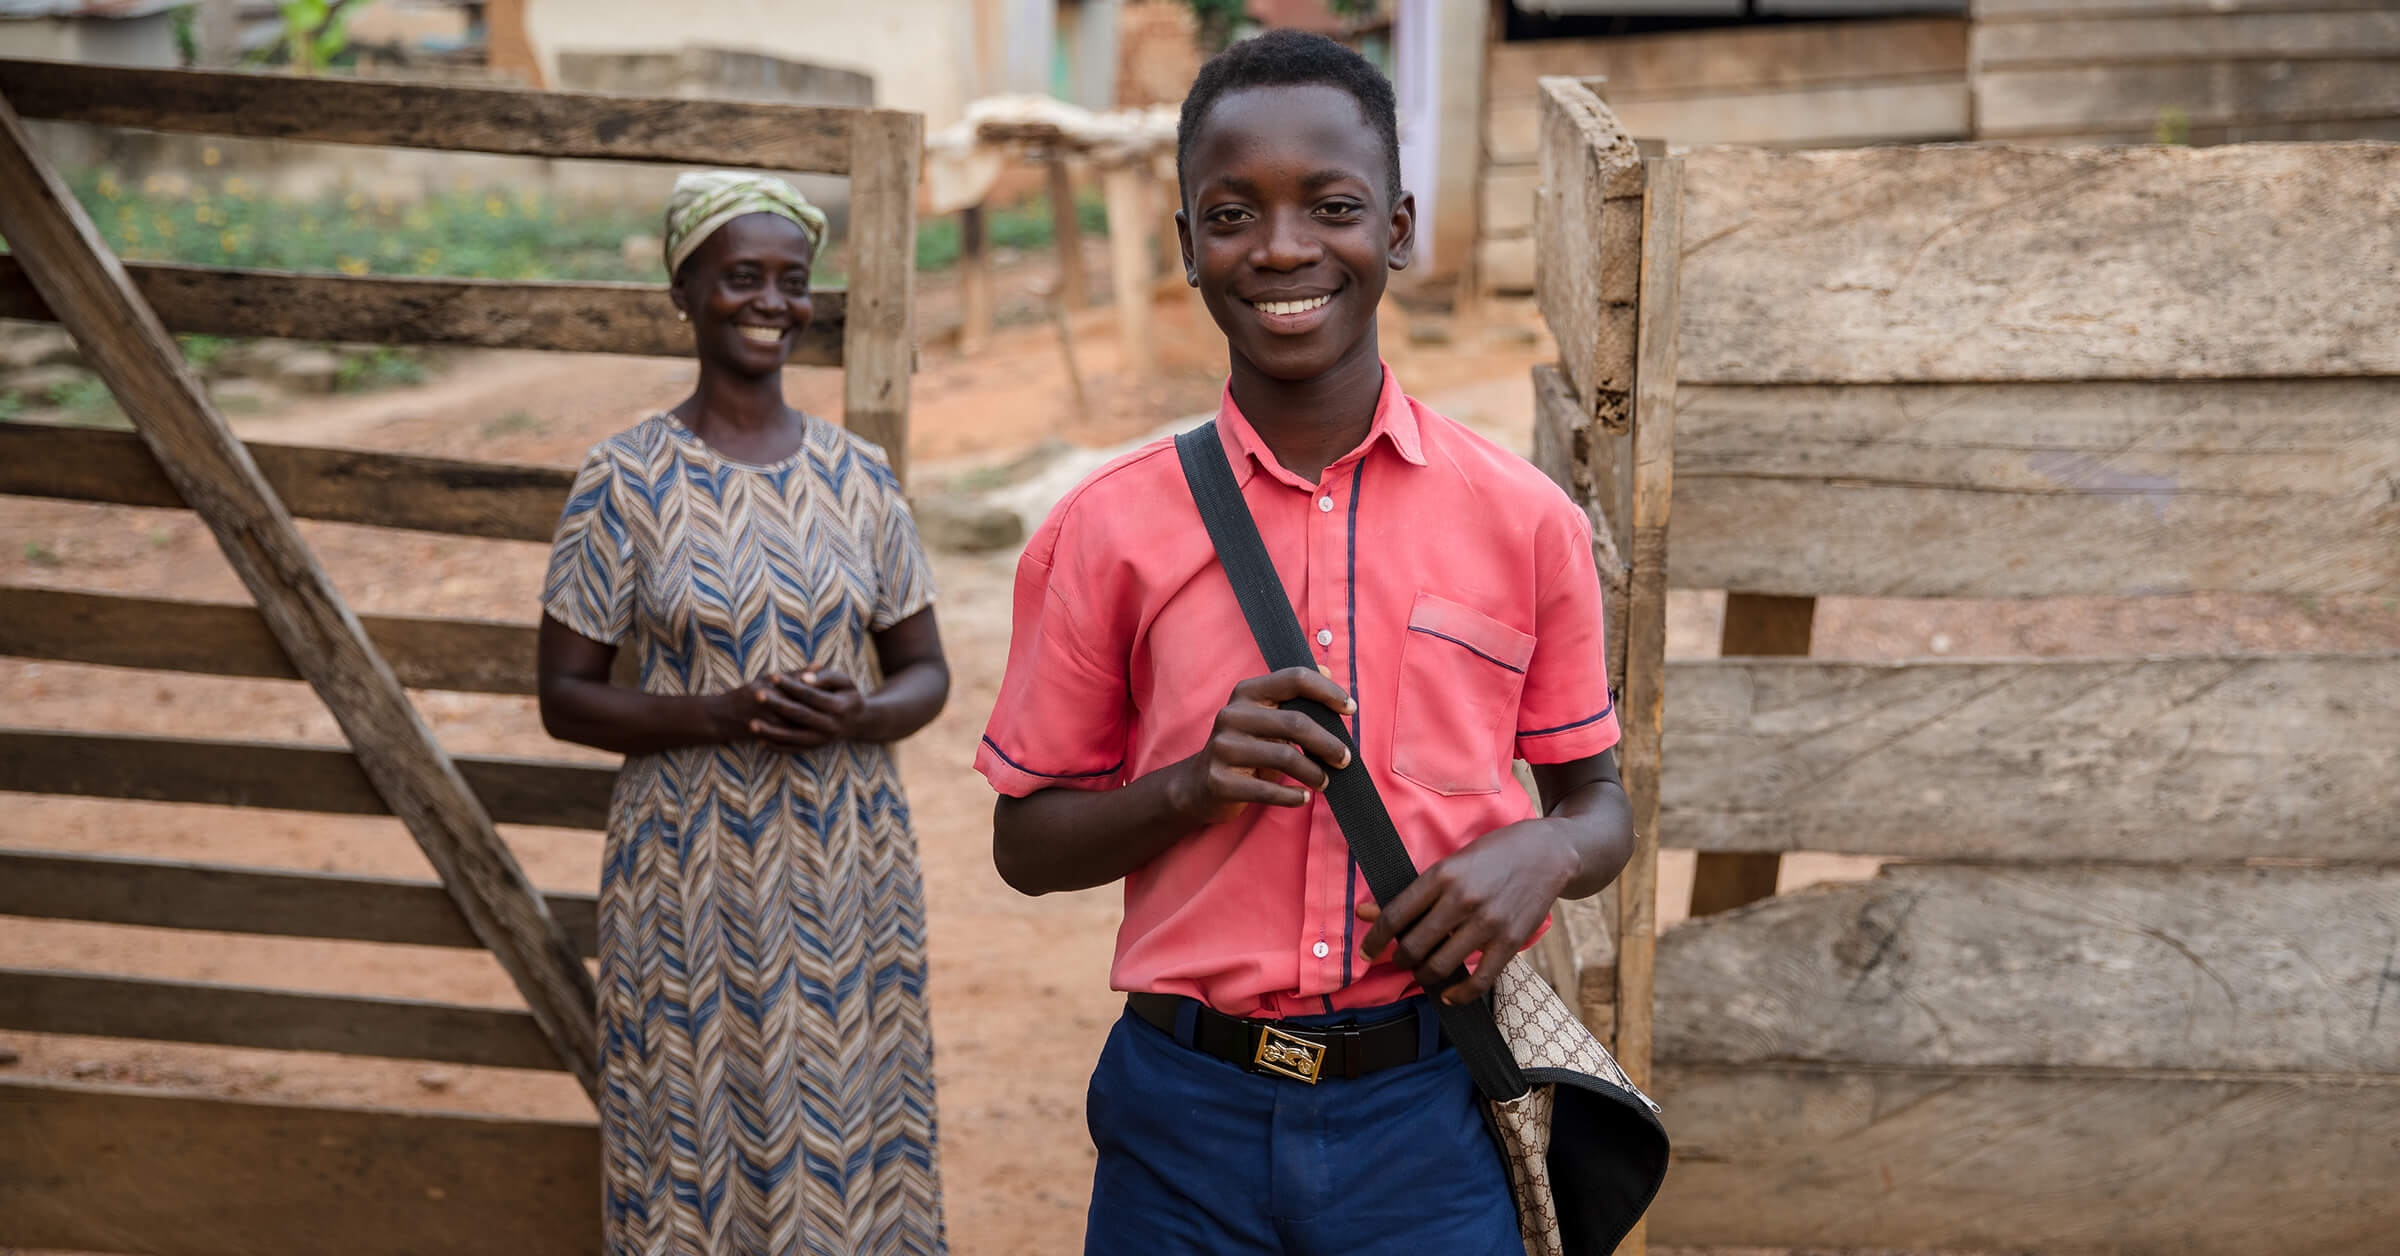 Reilun kaupan viljelijäperhe Ghanassa: vasemmalla nainen hymyilee ja keskellä poika hymyilee koululaukun kanssa. 